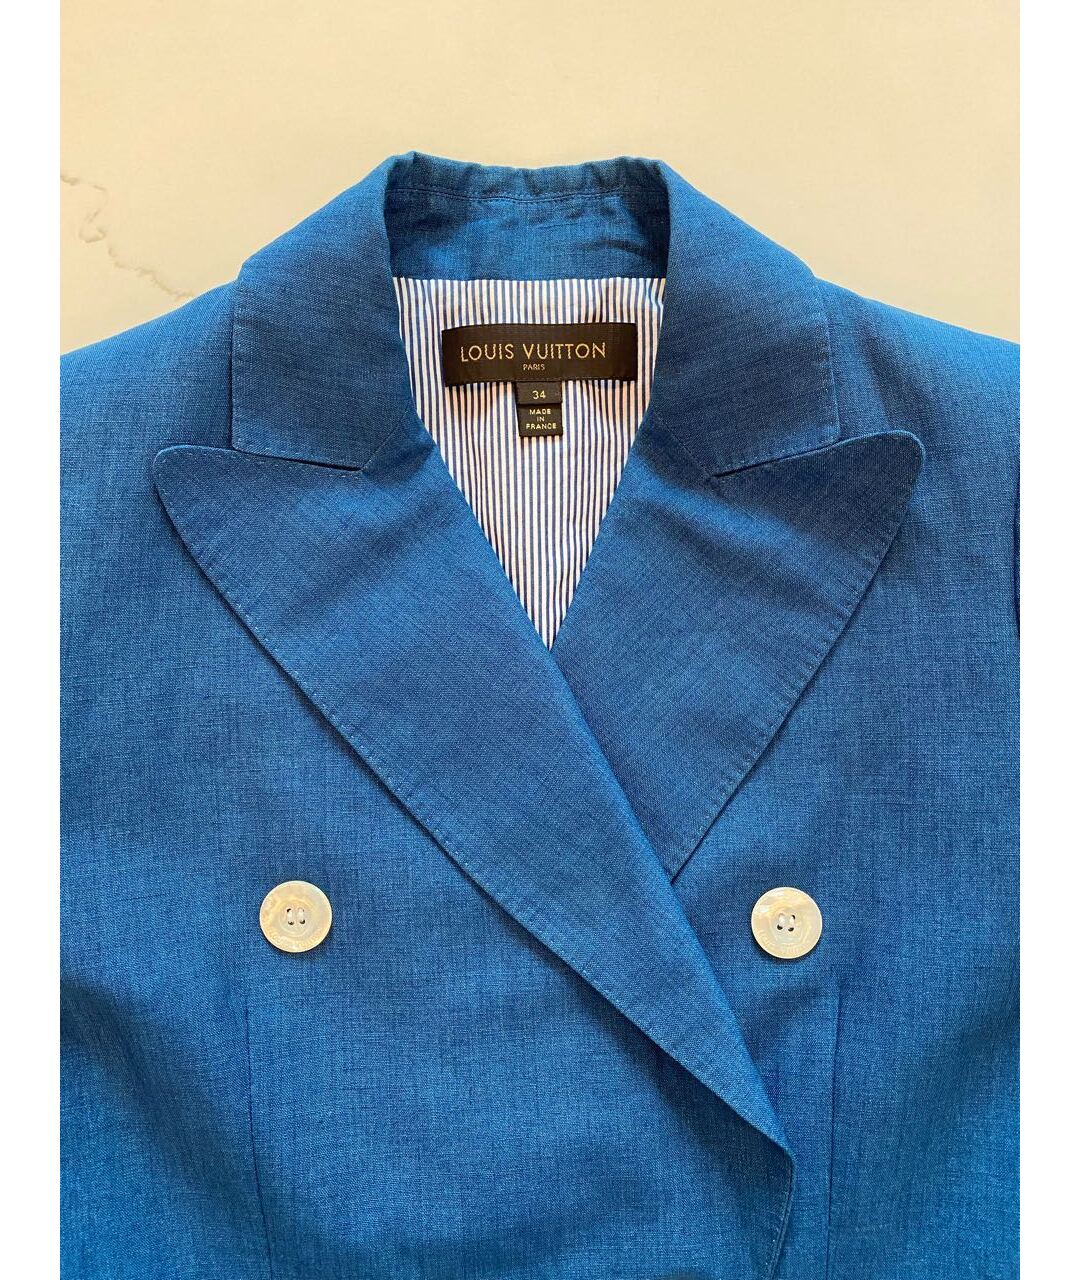 LOUIS VUITTON PRE-OWNED Голубой льняной жакет/пиджак, фото 3